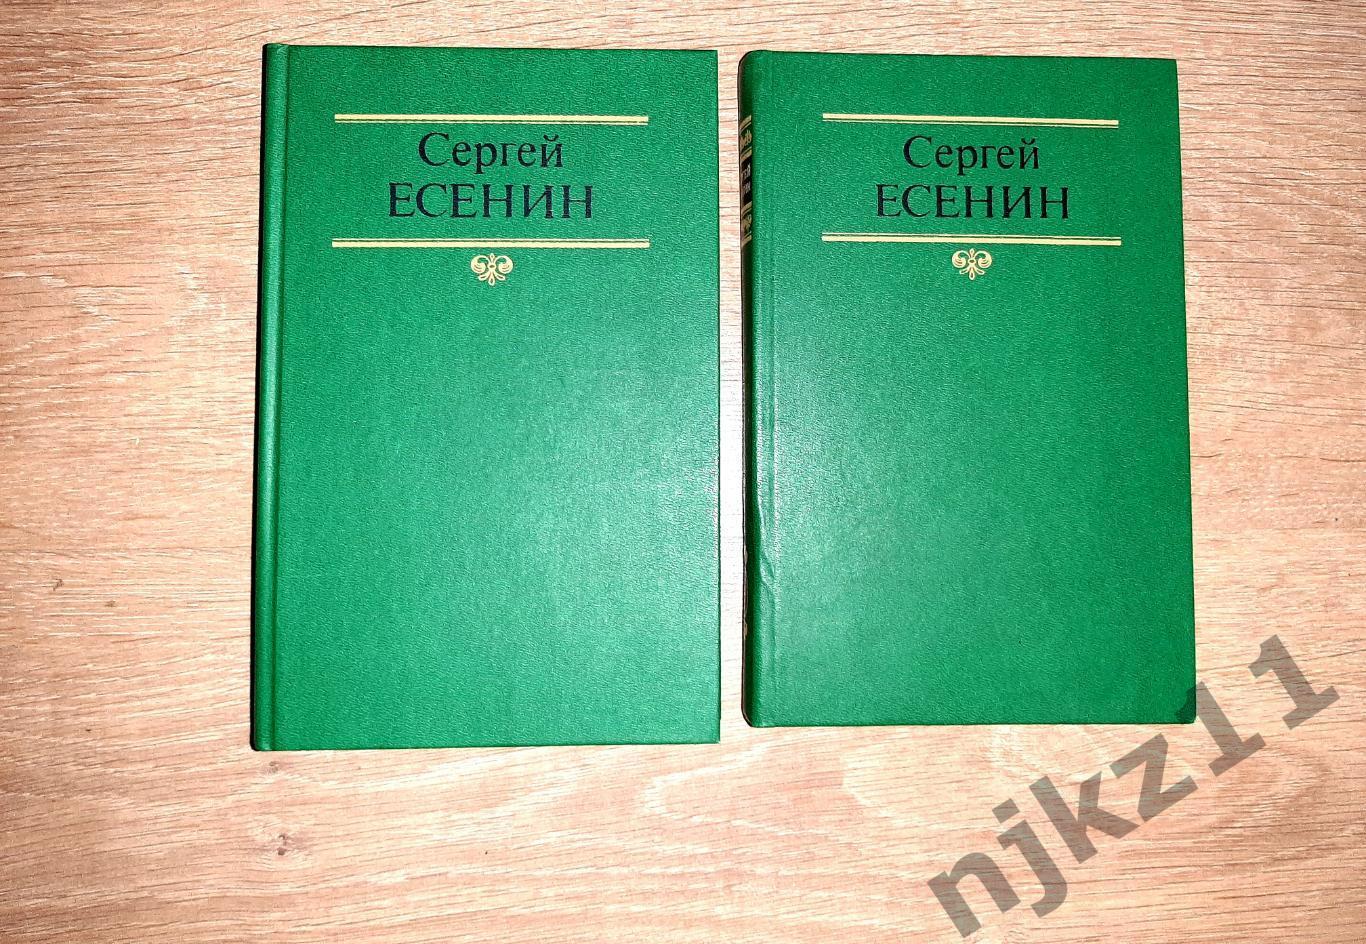 Есенин, Сергей Собрание сочинений В 2 томах 1